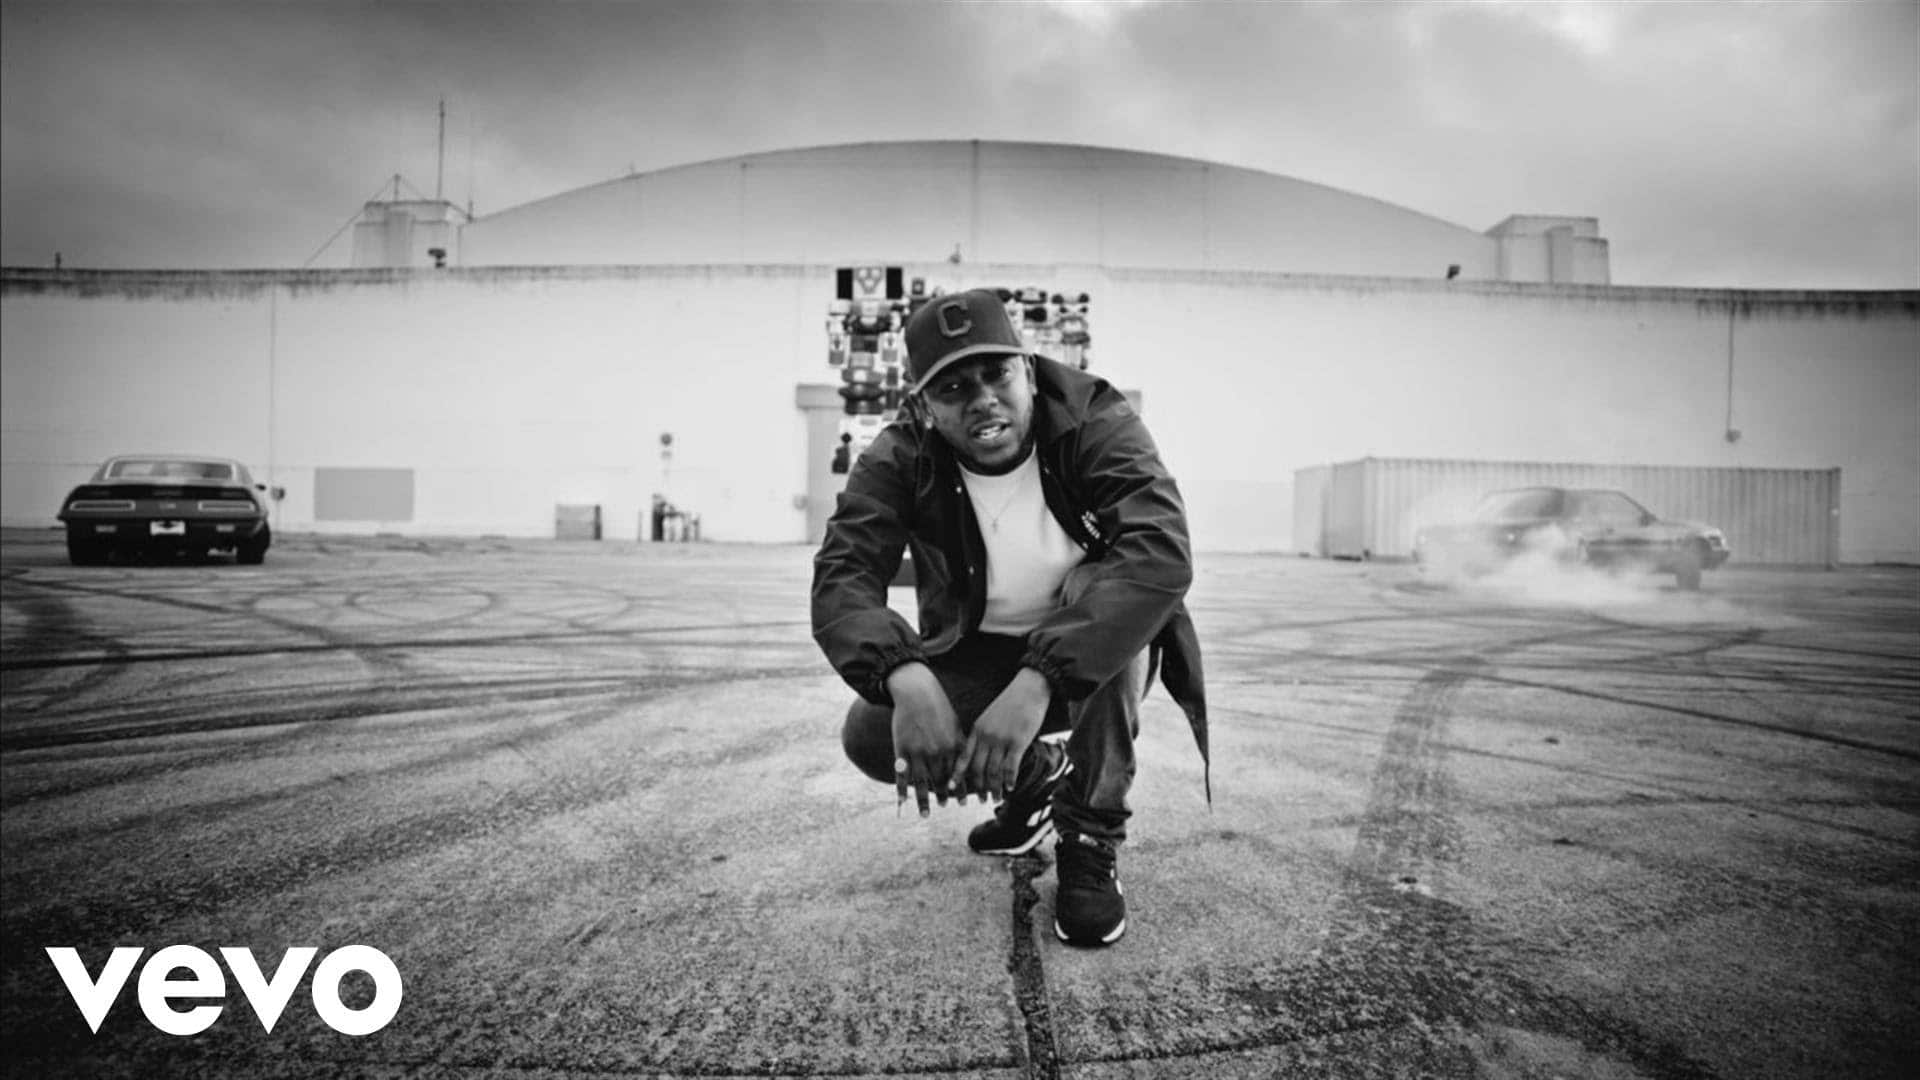 Kendrick Lamar – Alright